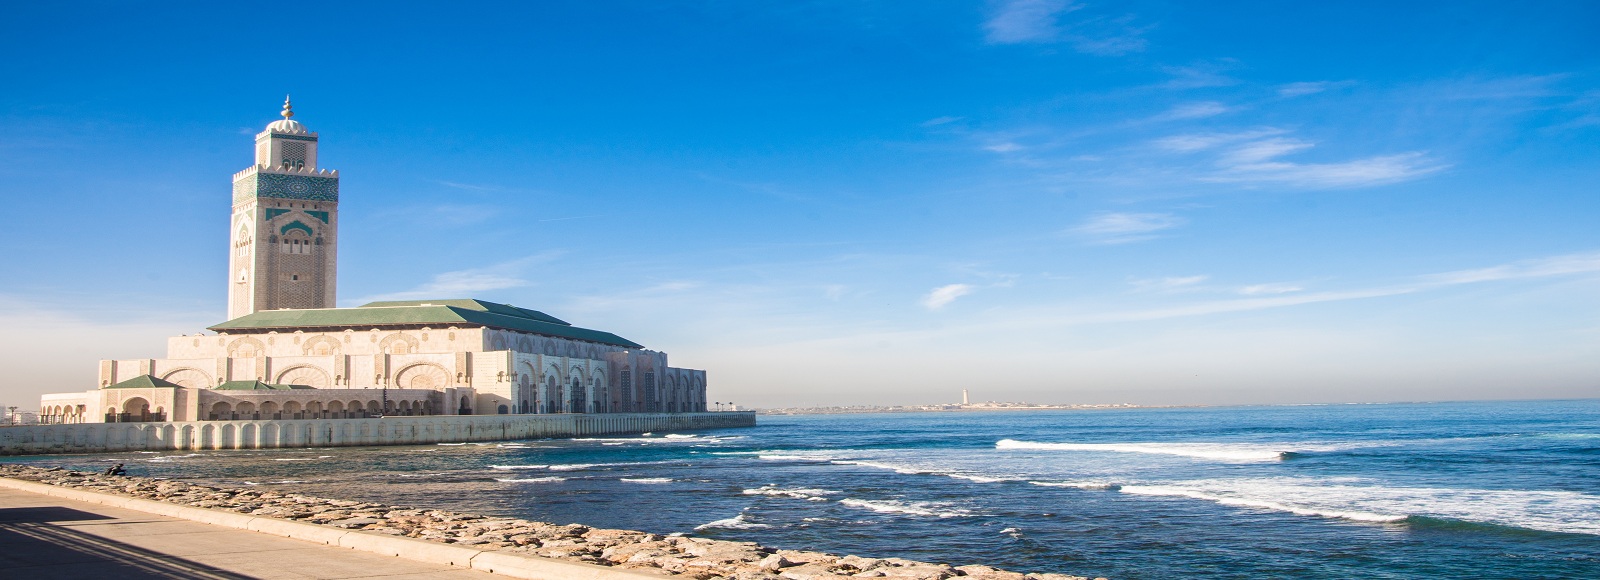 Ofertas de Traslados en Casablanca. Traslados económicos en Casablanca 